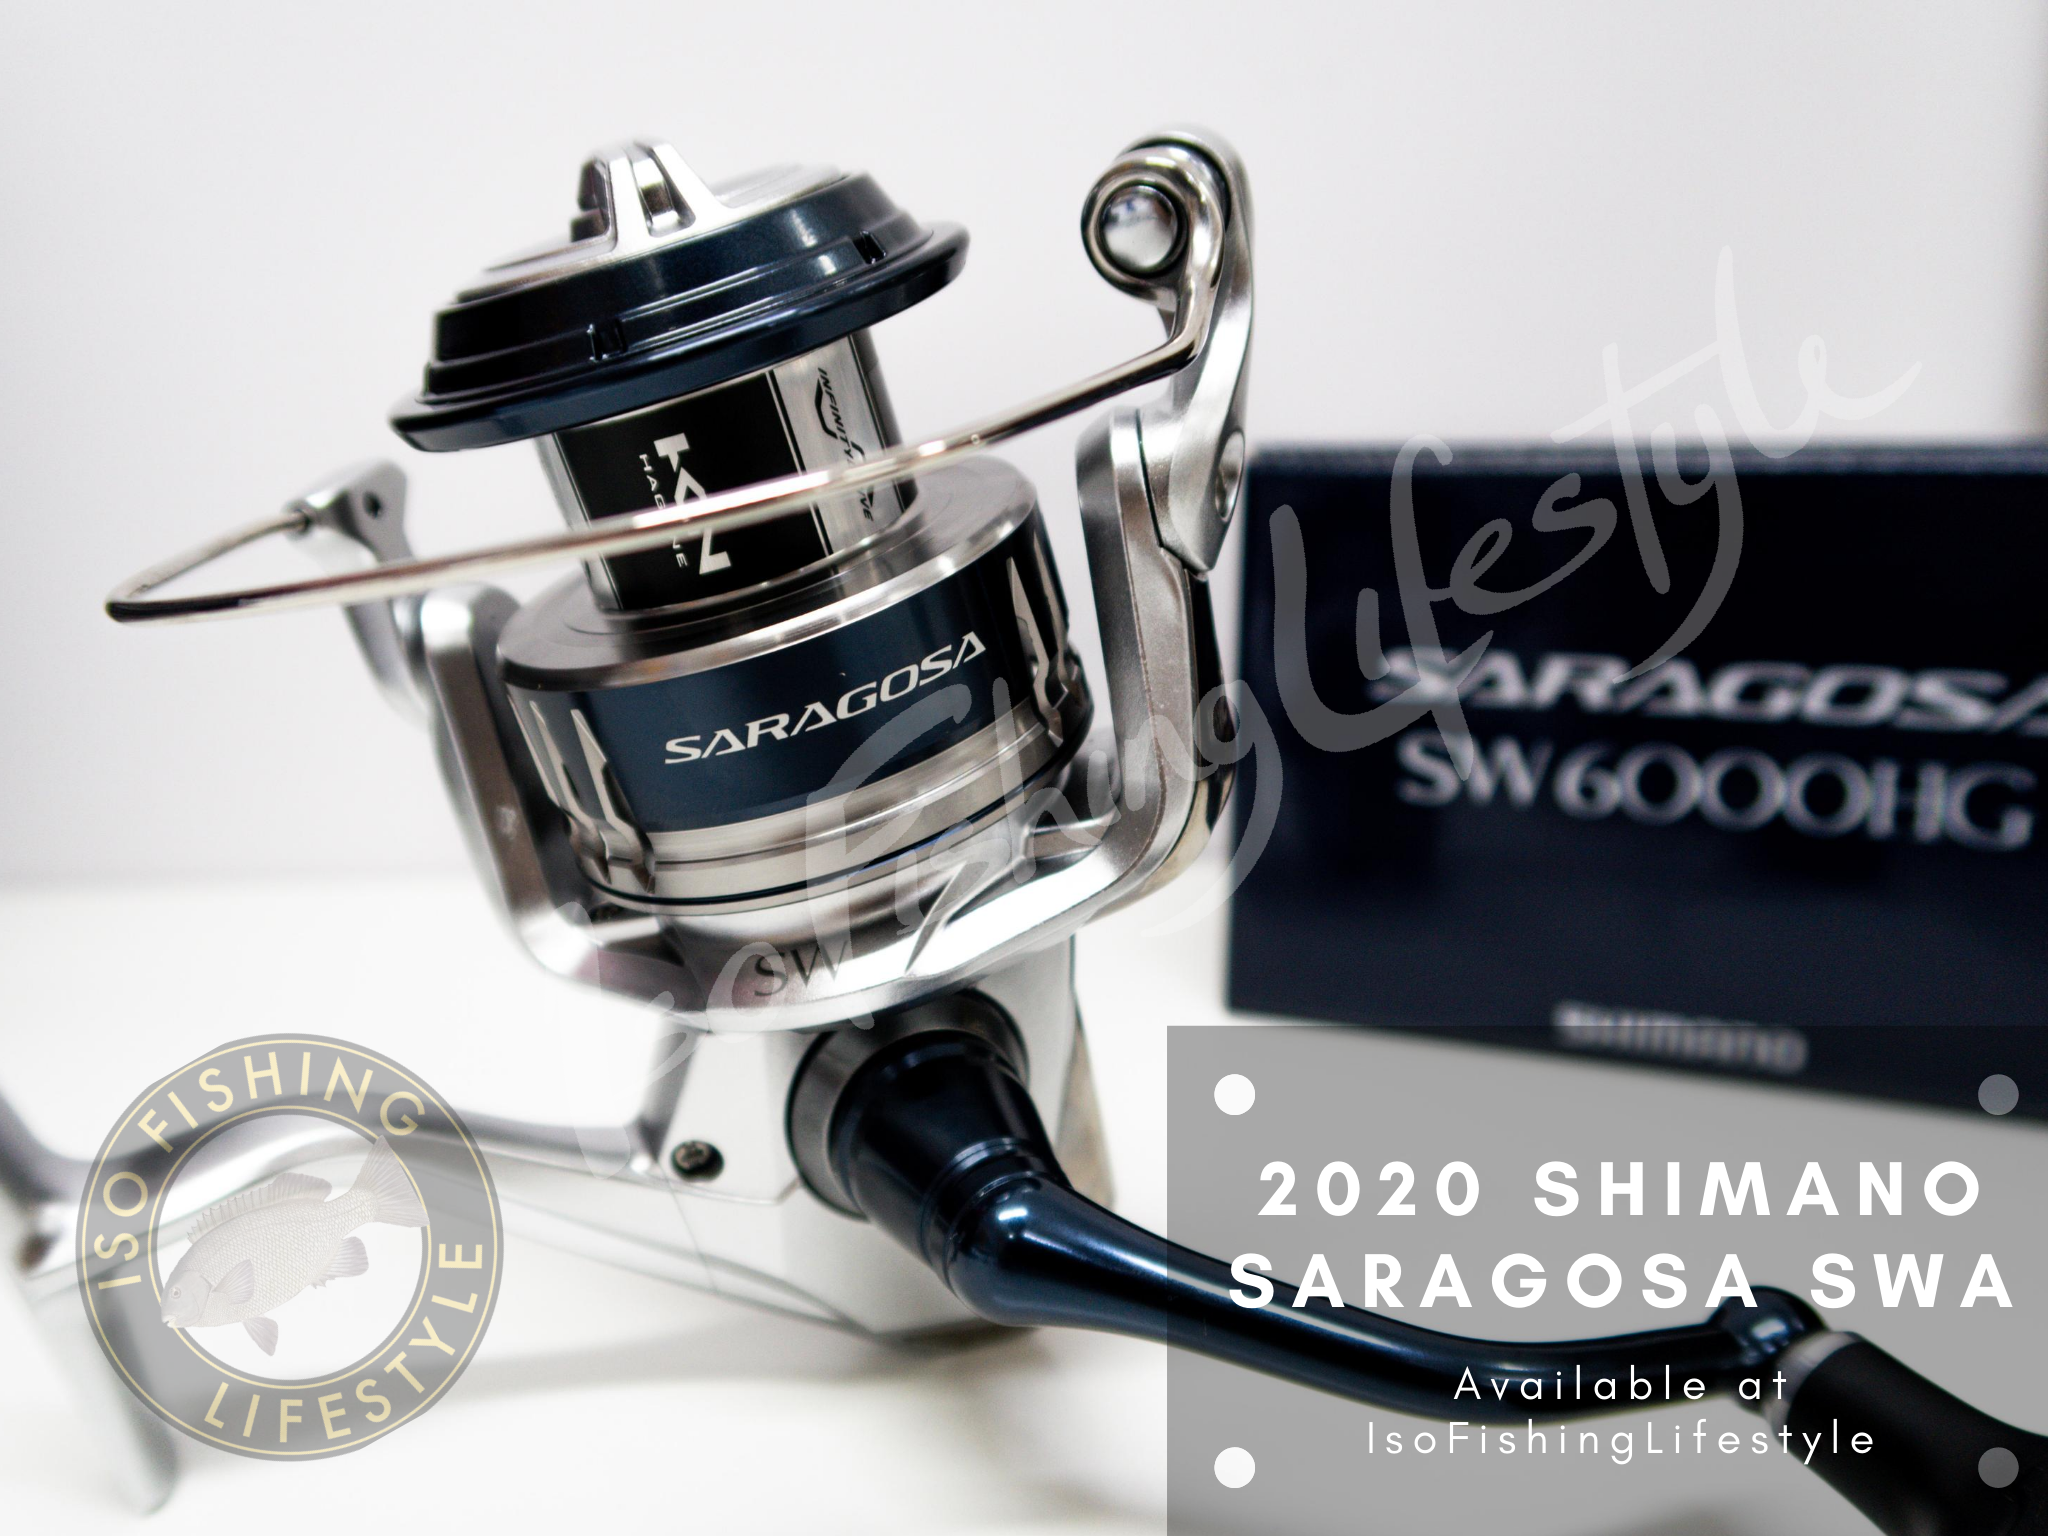 Shimano 20 Saragosa SWA – Isofishinglifestyle